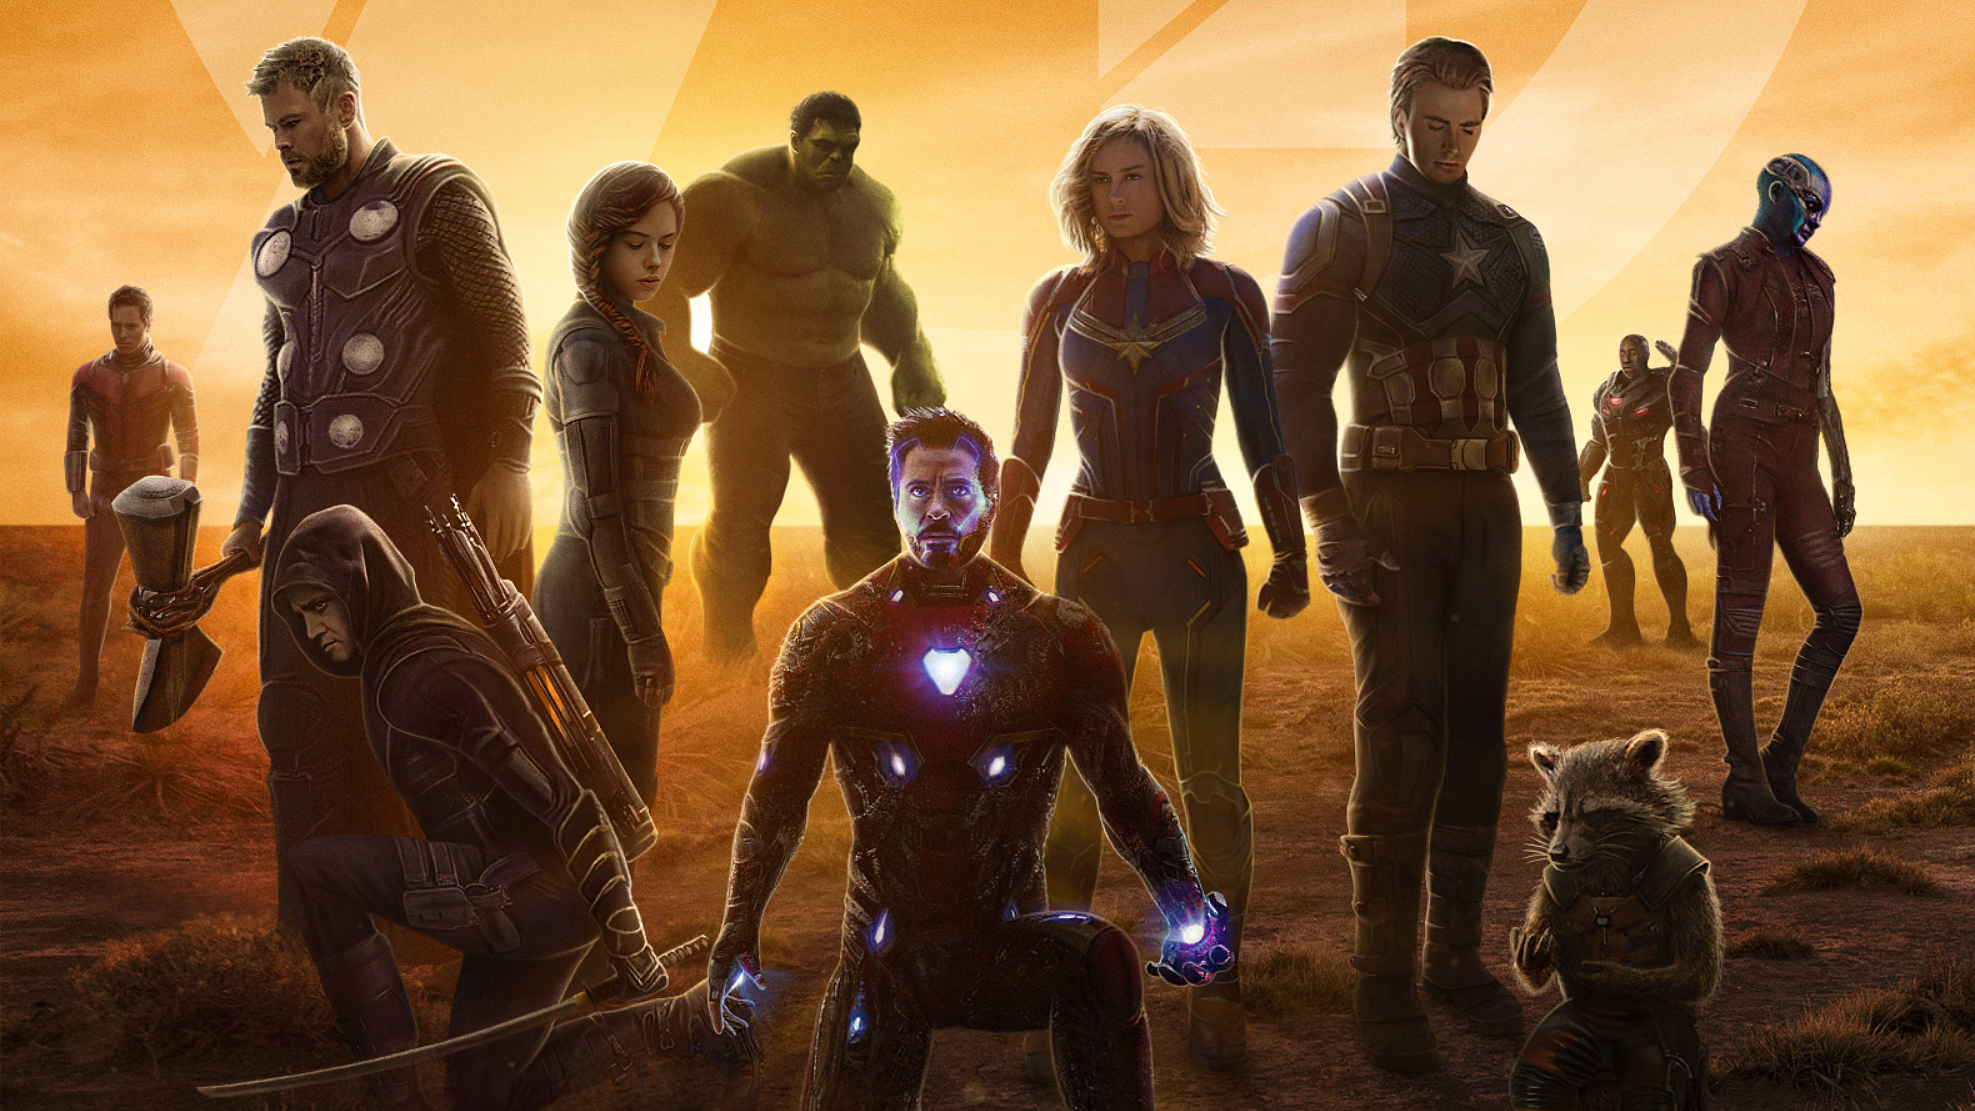 4K Avengers Endgame 2019 Wallpapers